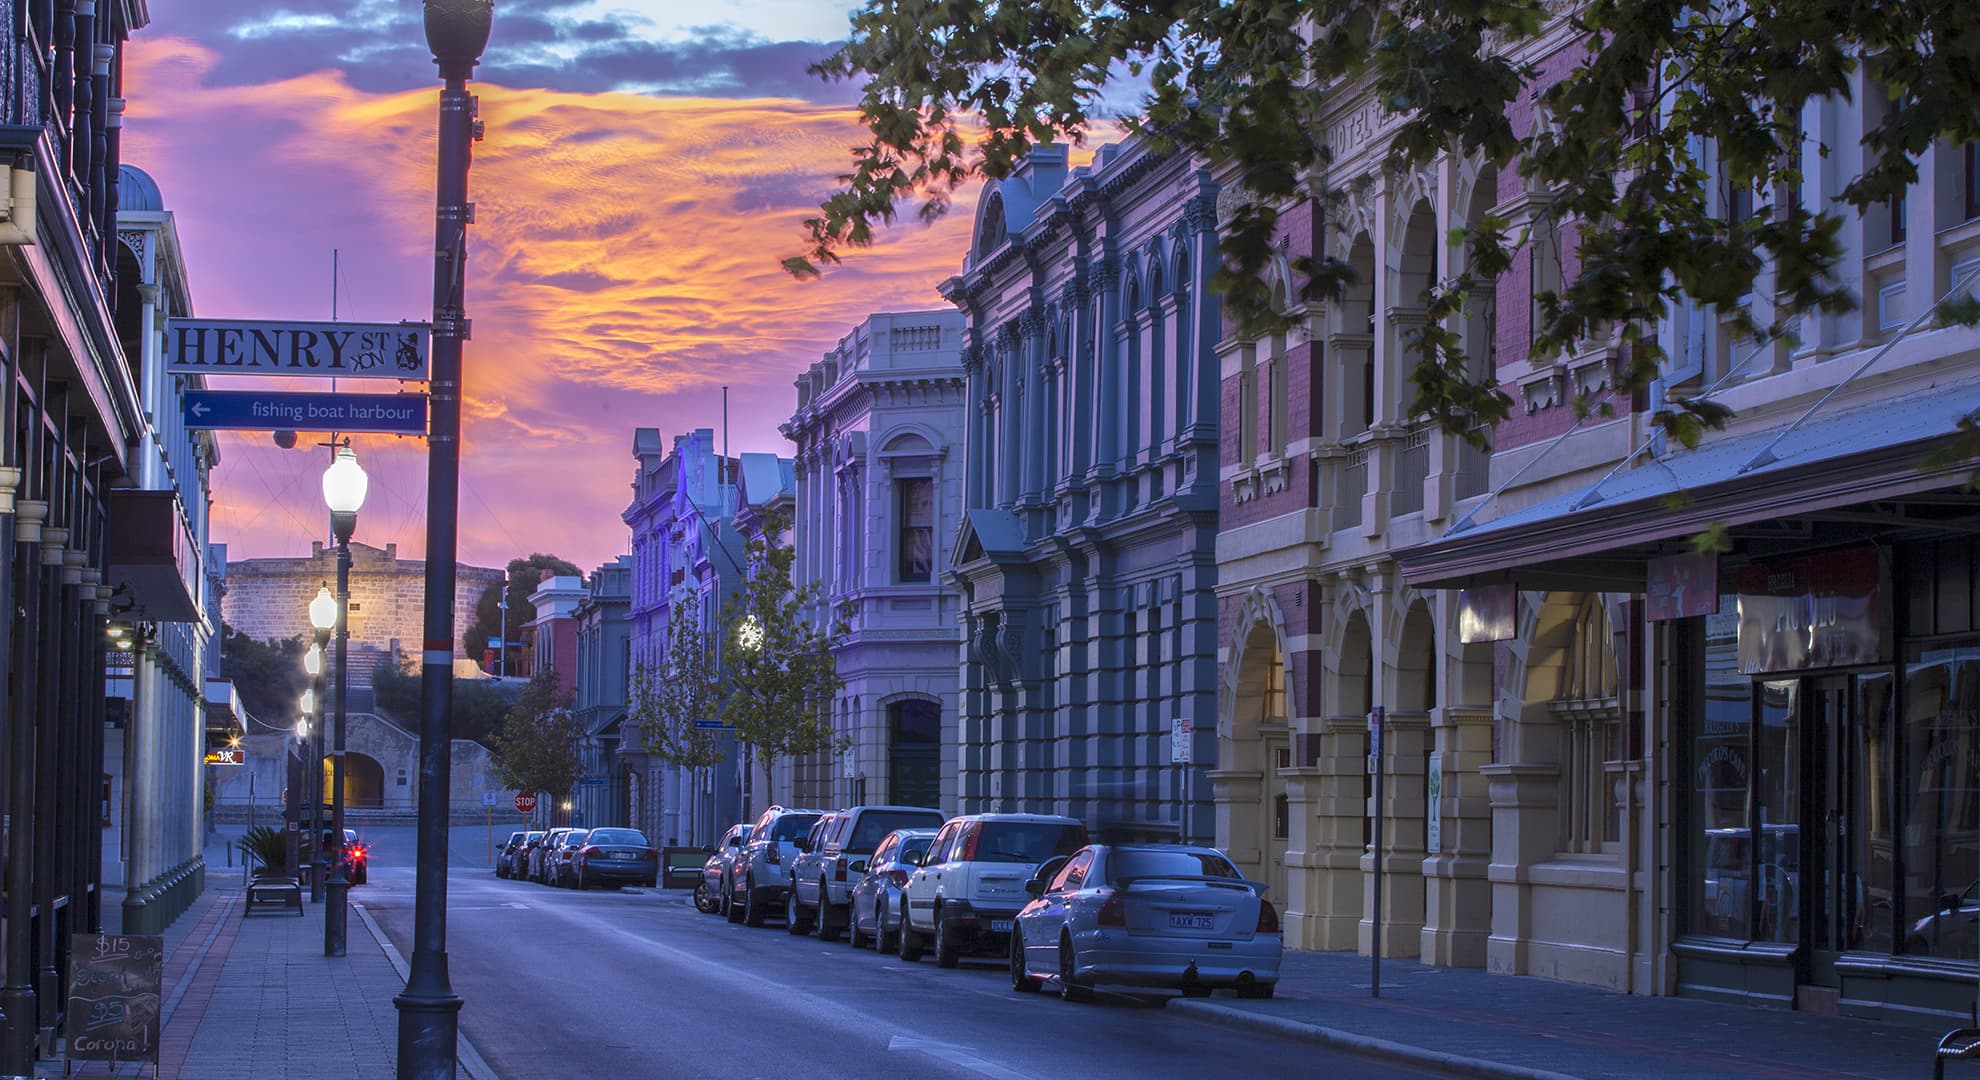 Fremantle city street scene